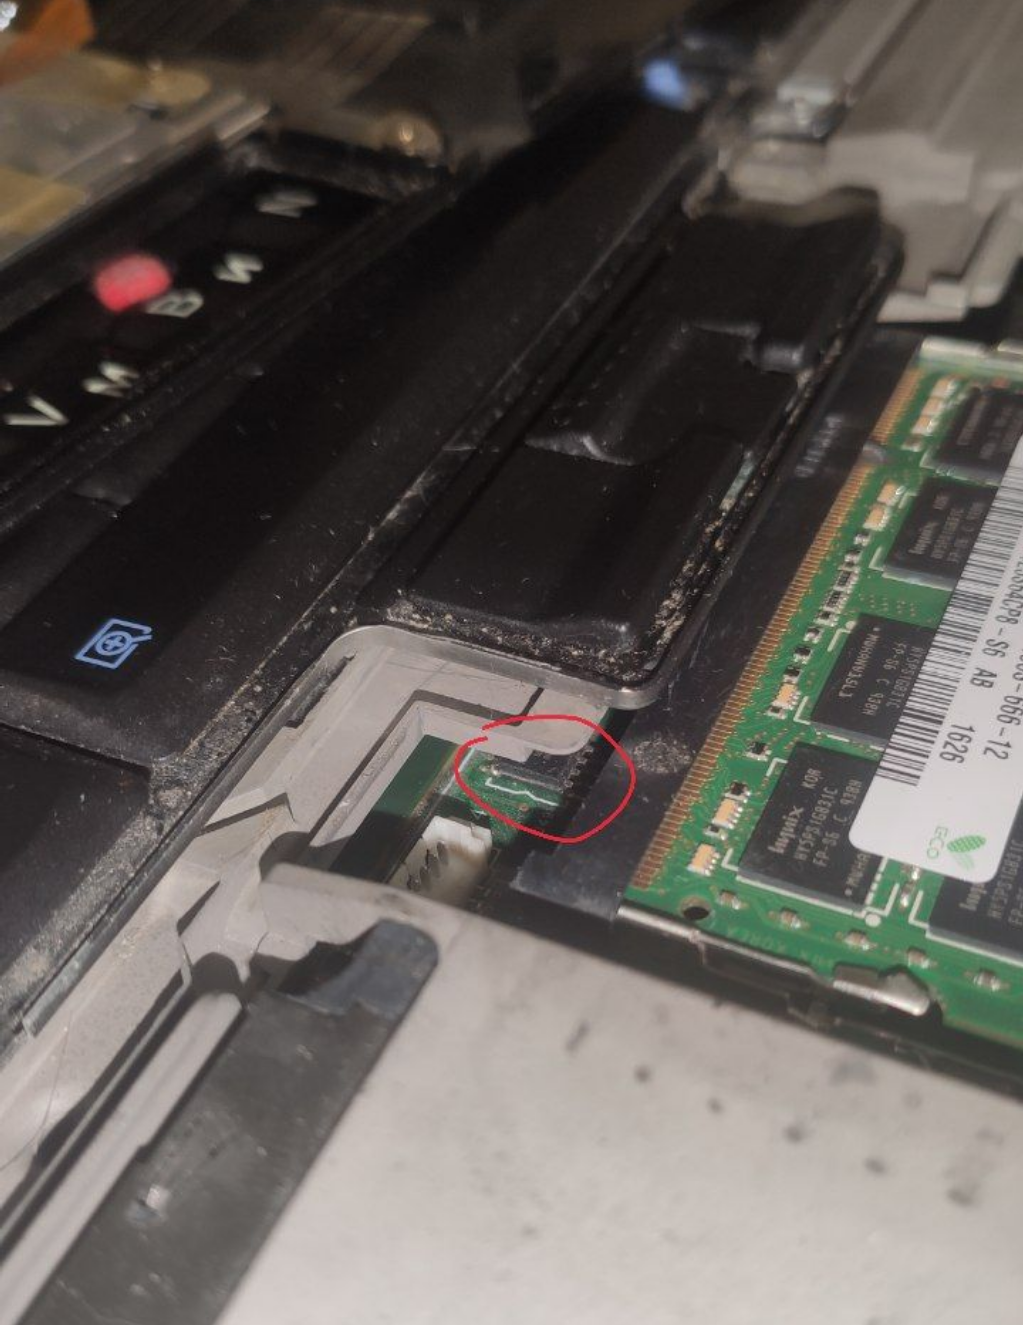 BIOS чип находится возле оперативной памяти, под левой кнопкой для трэкпоинта.